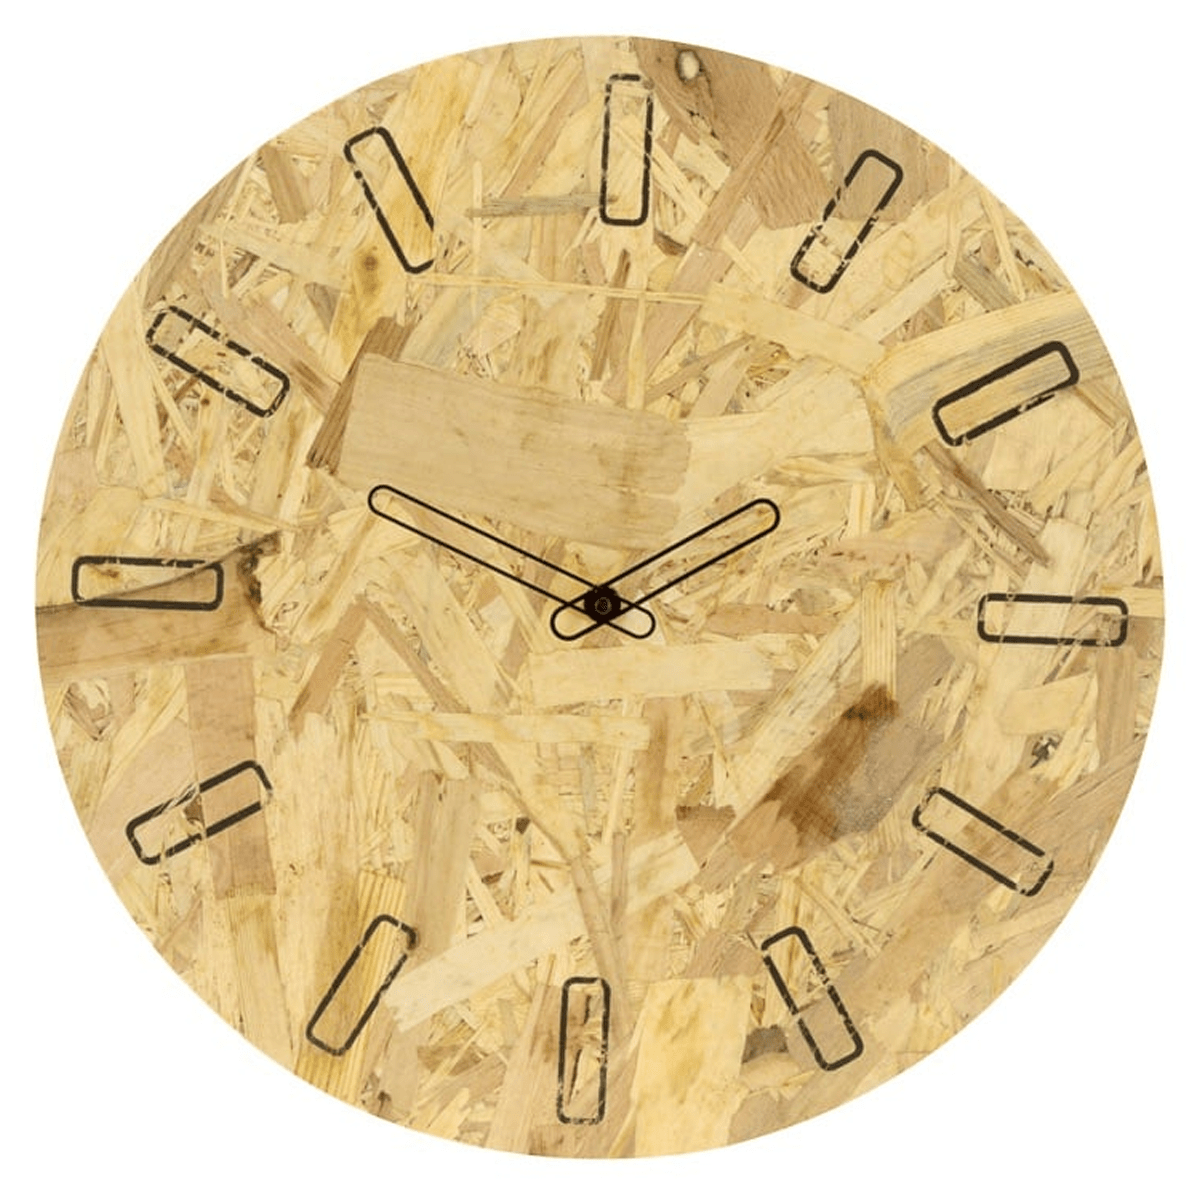 Pressed Plywood OSB Analog Wall Clock (40 cm)